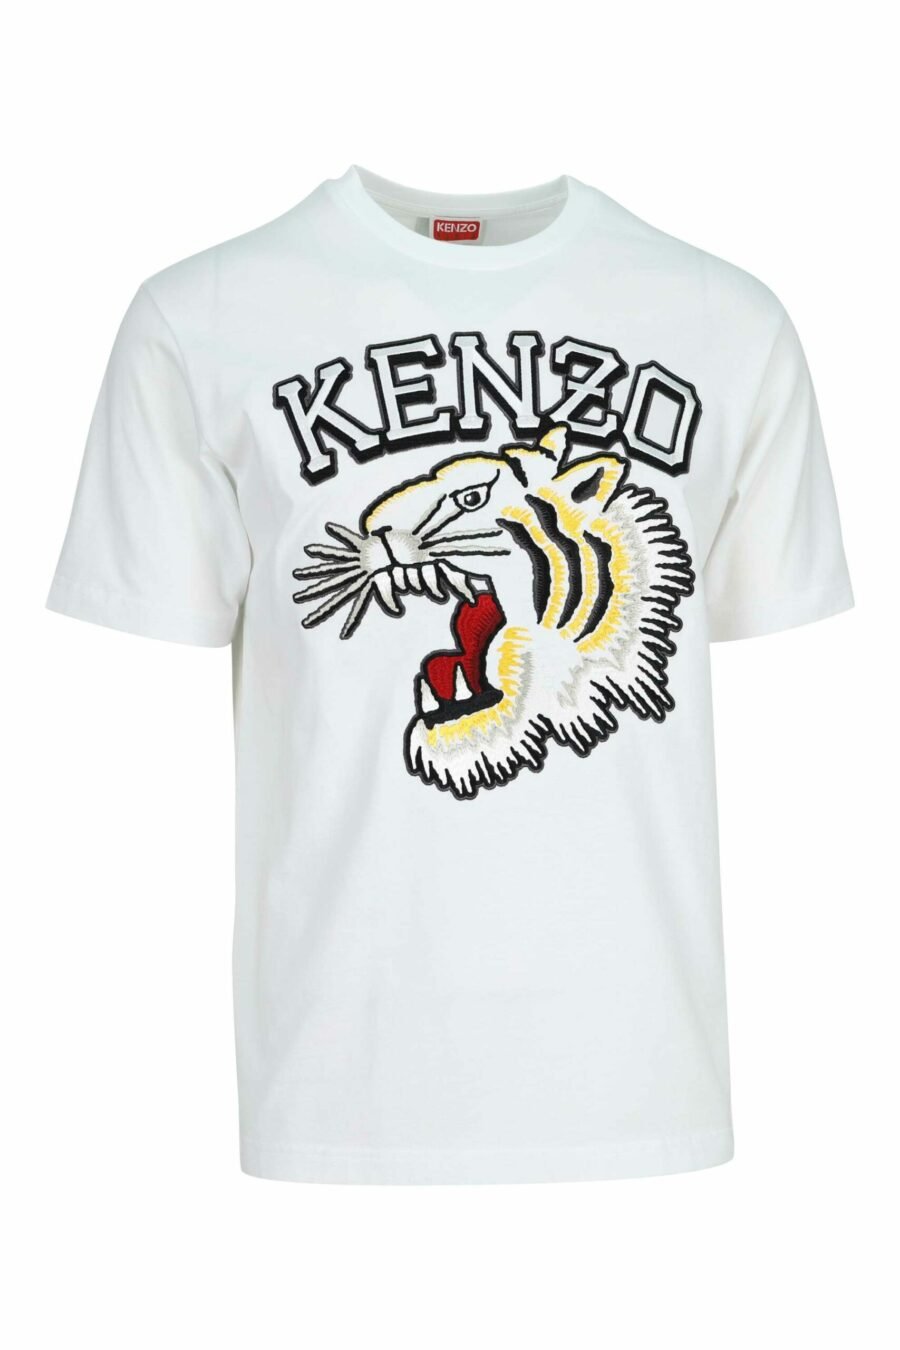 Camiseta blanca con maxilogo tigre multicolor - 3612230625136 scaled